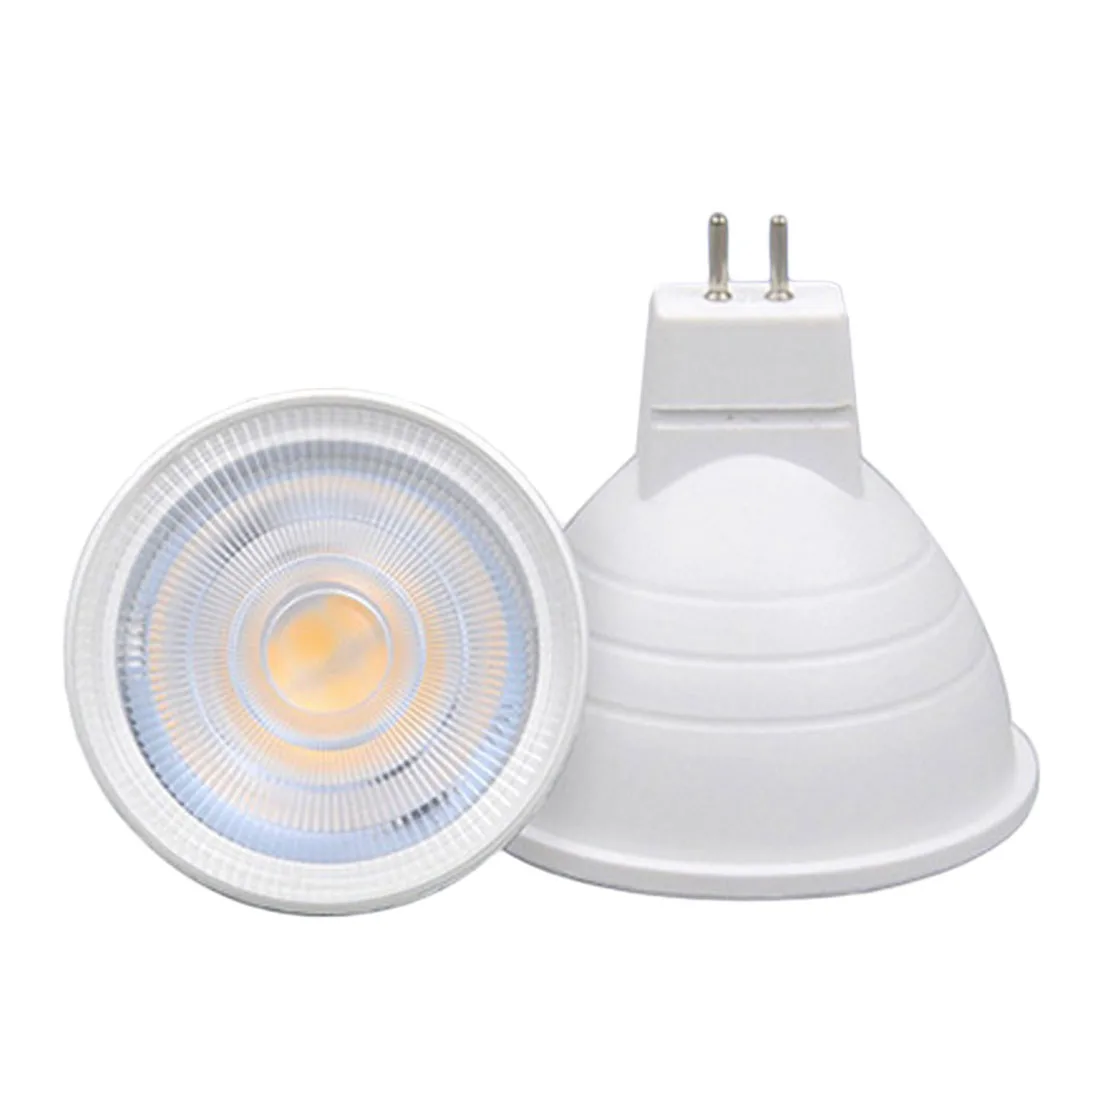 6 Вт 220 В светодио дный лампа лампада светодио дный конденсаторный лампа диффузии Spotlight Энергосбережение домашнего освещения светодио дный